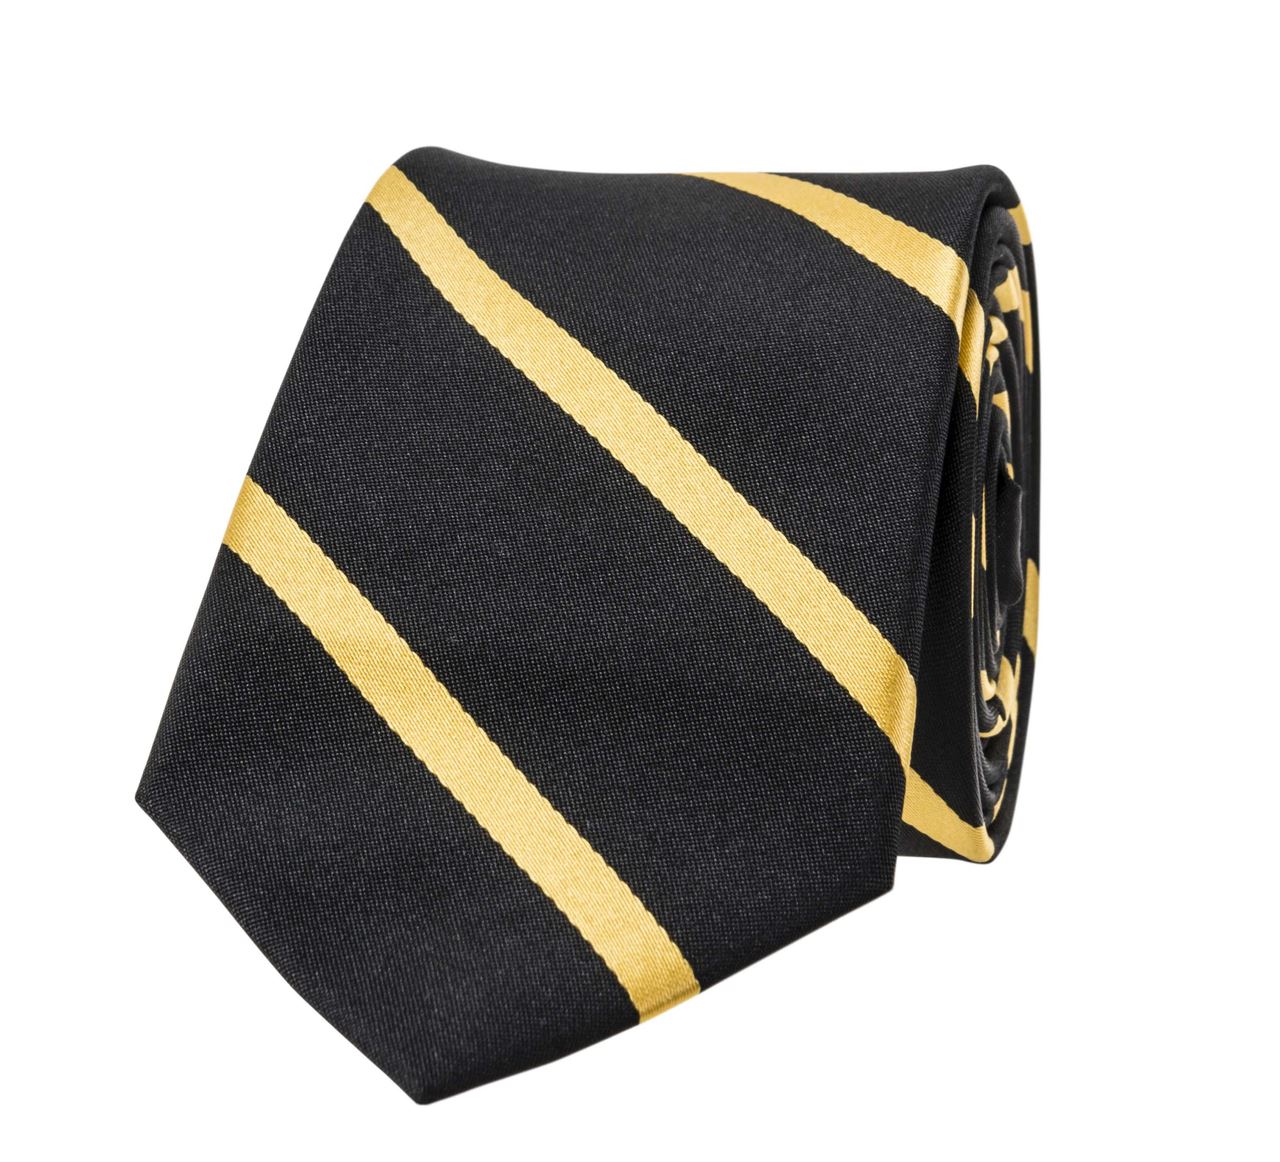 Cravate de service noir or (vendu par 5) - Molinel - 2909999069